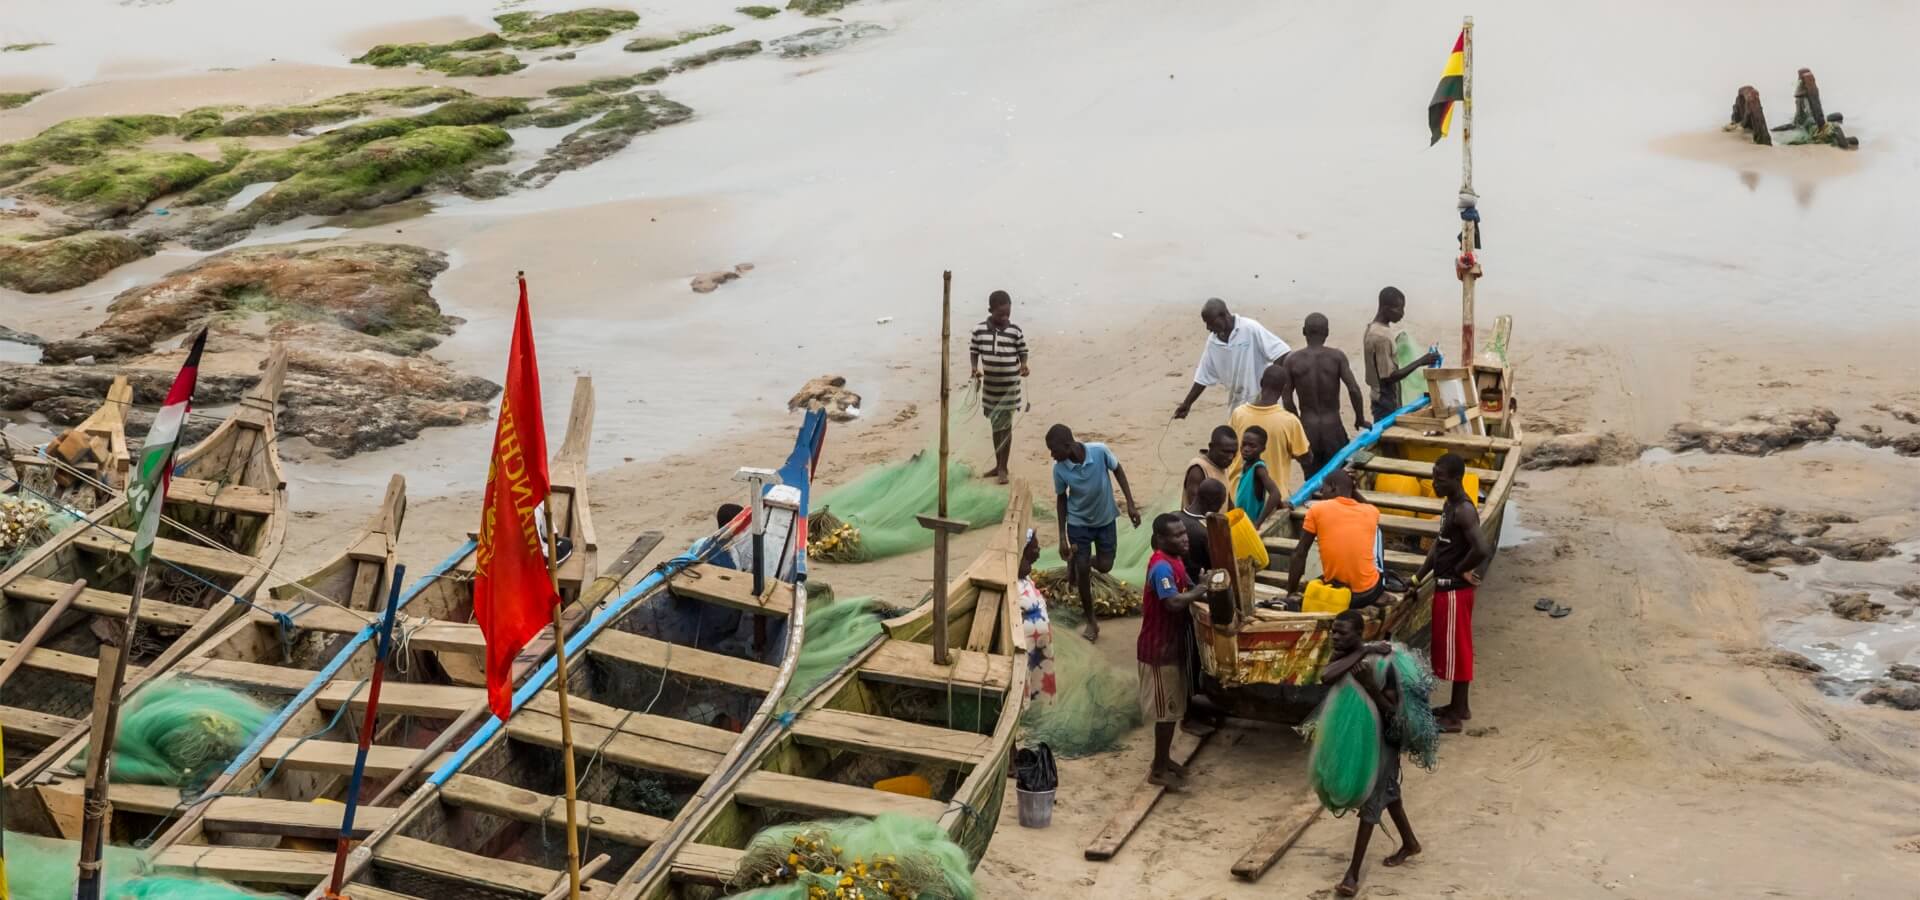 Groupe de pêcheurs Noirs à côté de deux bateaux sur le sable.